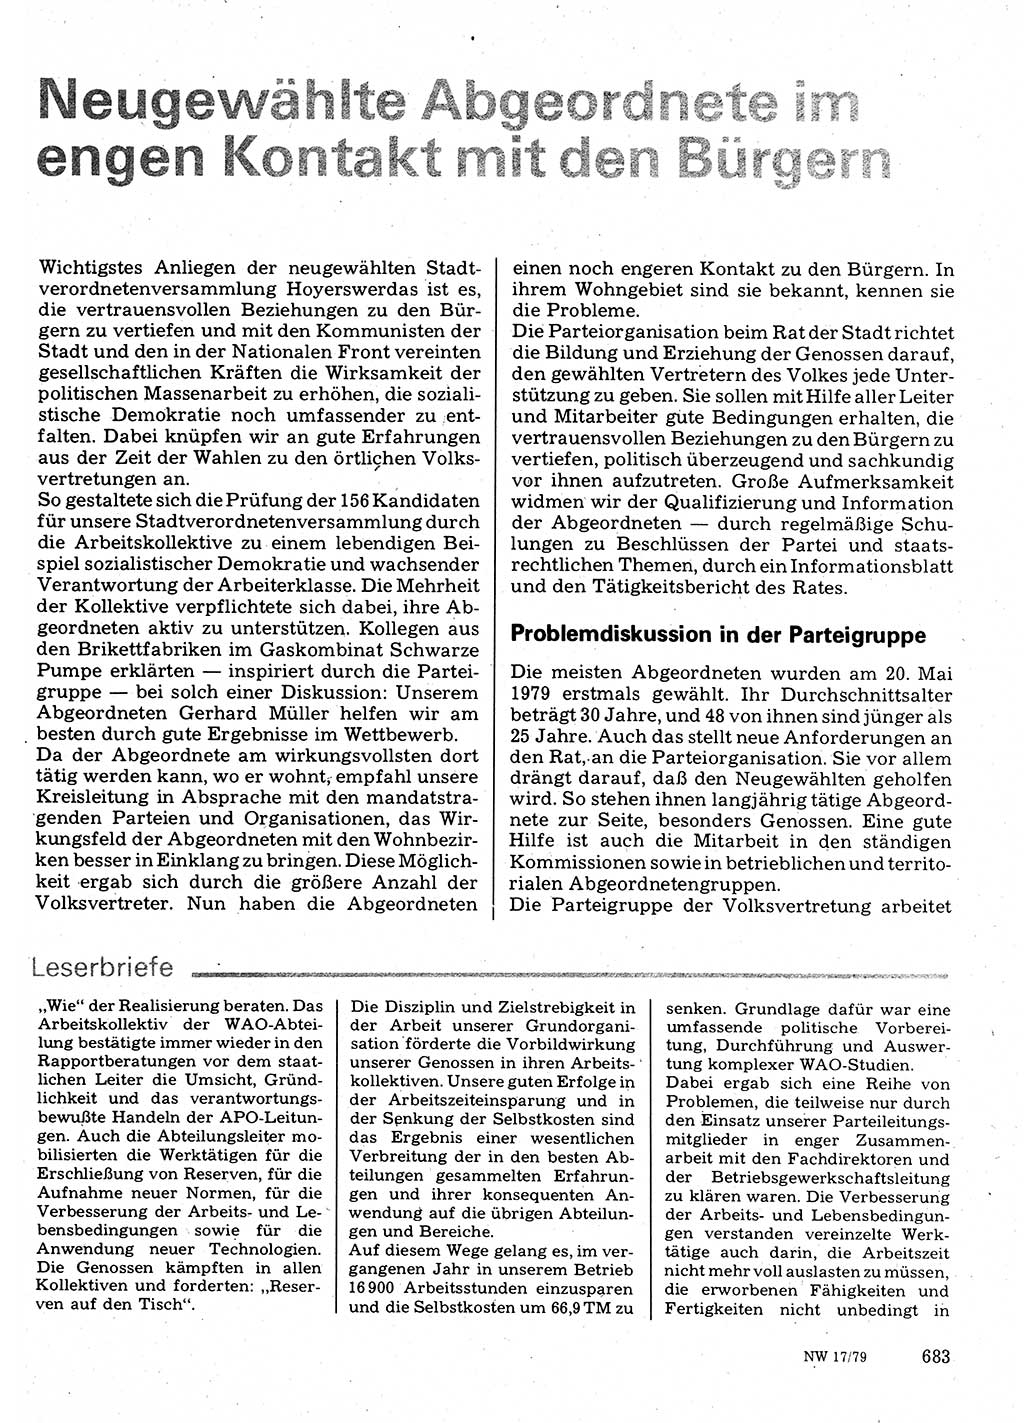 Neuer Weg (NW), Organ des Zentralkomitees (ZK) der SED (Sozialistische Einheitspartei Deutschlands) für Fragen des Parteilebens, 34. Jahrgang [Deutsche Demokratische Republik (DDR)] 1979, Seite 683 (NW ZK SED DDR 1979, S. 683)